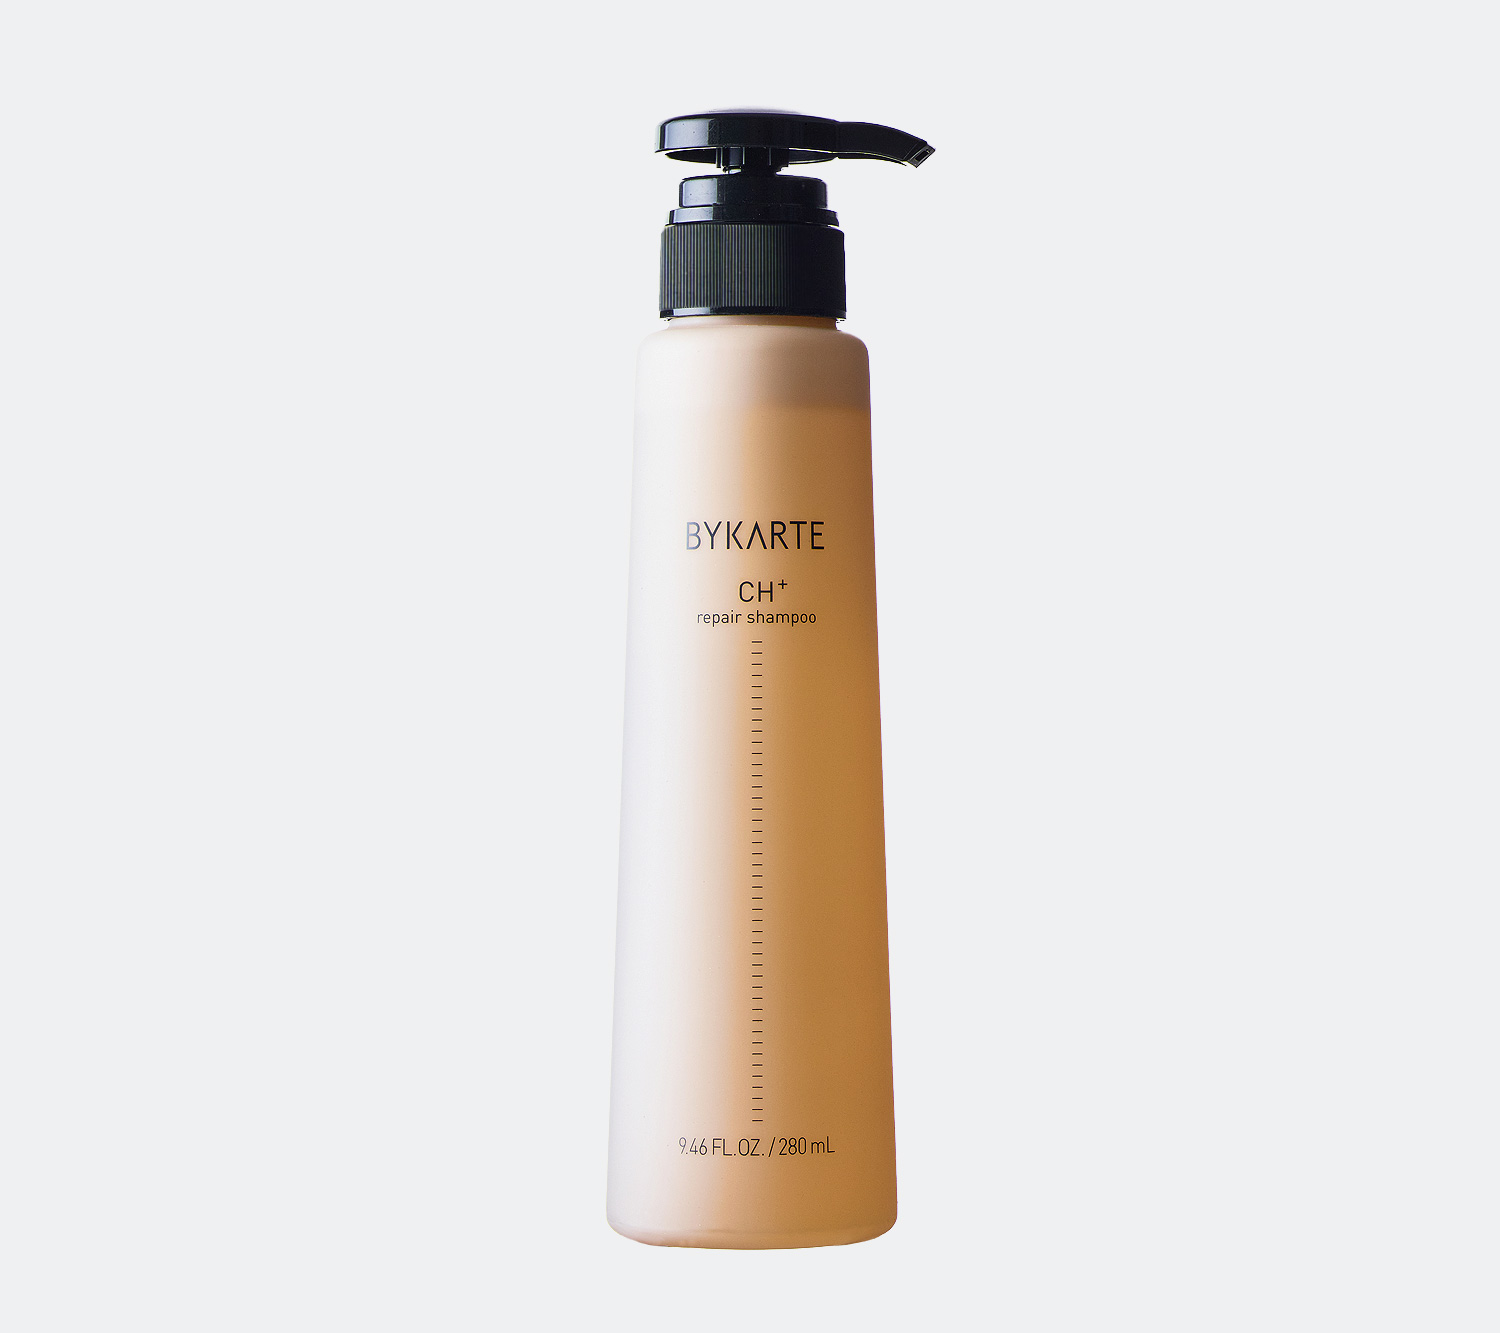 BYKARTE CH+ repair shampoo